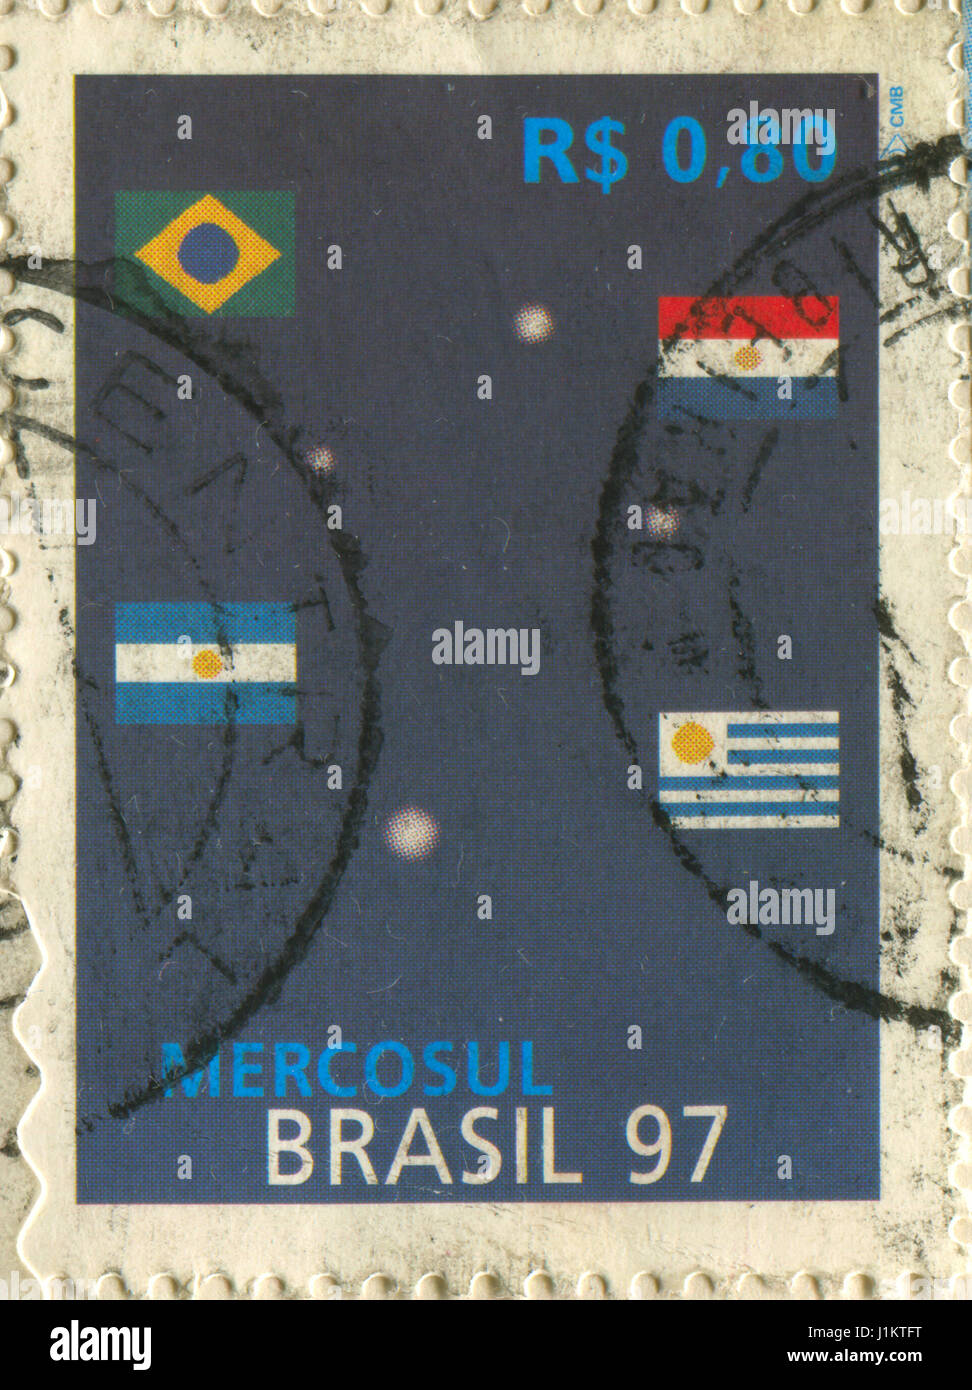 GOMEL, WEIßRUSSLAND, 21. APRIL 2017. Stempel in Brasilien gedruckt zeigt Bild der Mercosur oder Mercosul subregionalen Block, ca. 1997. Stockfoto